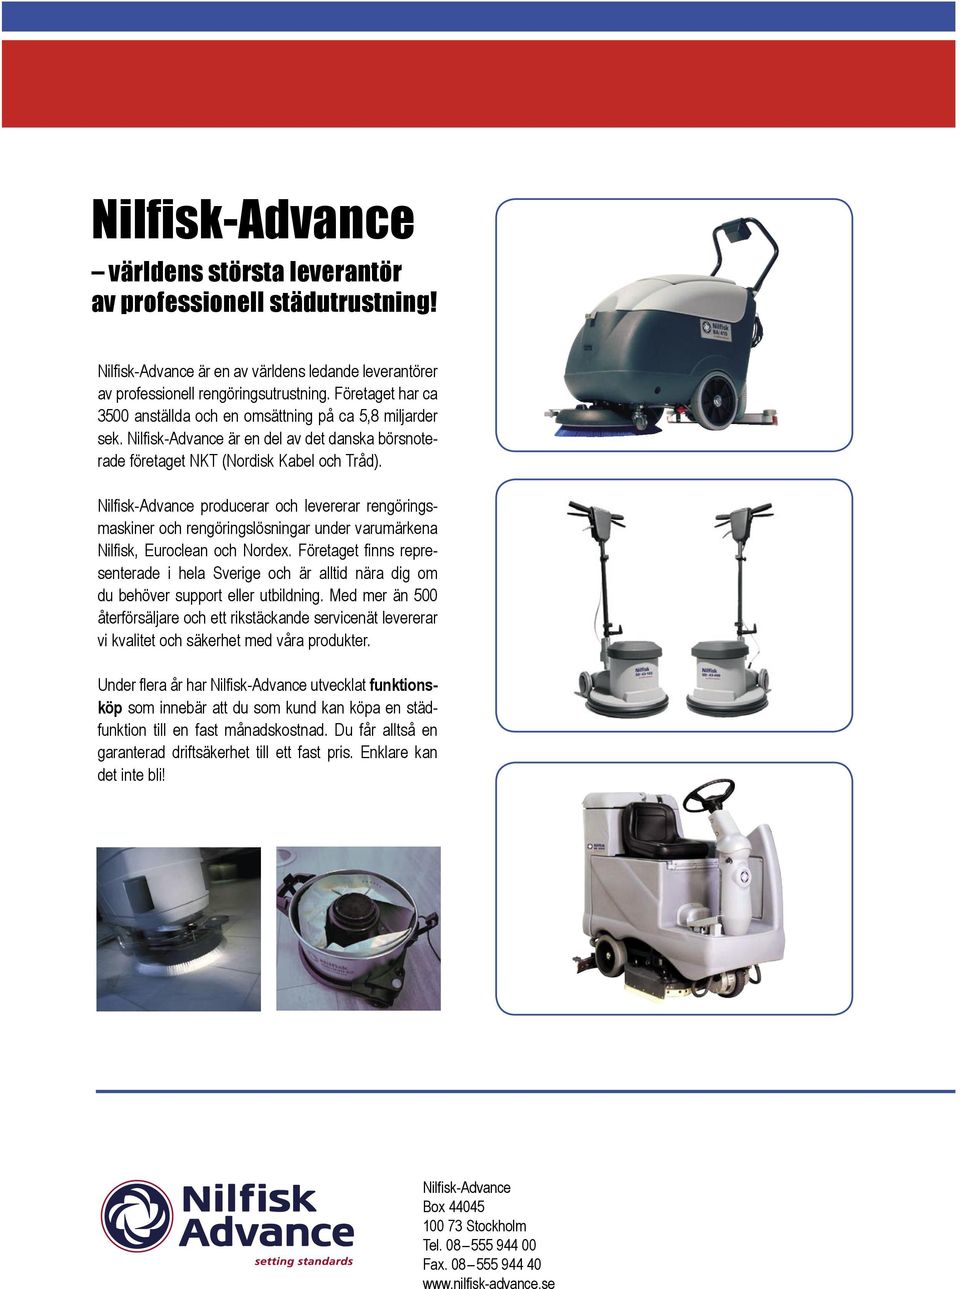 Nilfisk-Advance producerar och levererar rengöringsmaskiner och rengöringslösningar under varumärkena Nilfisk, Euroclean och Nordex.